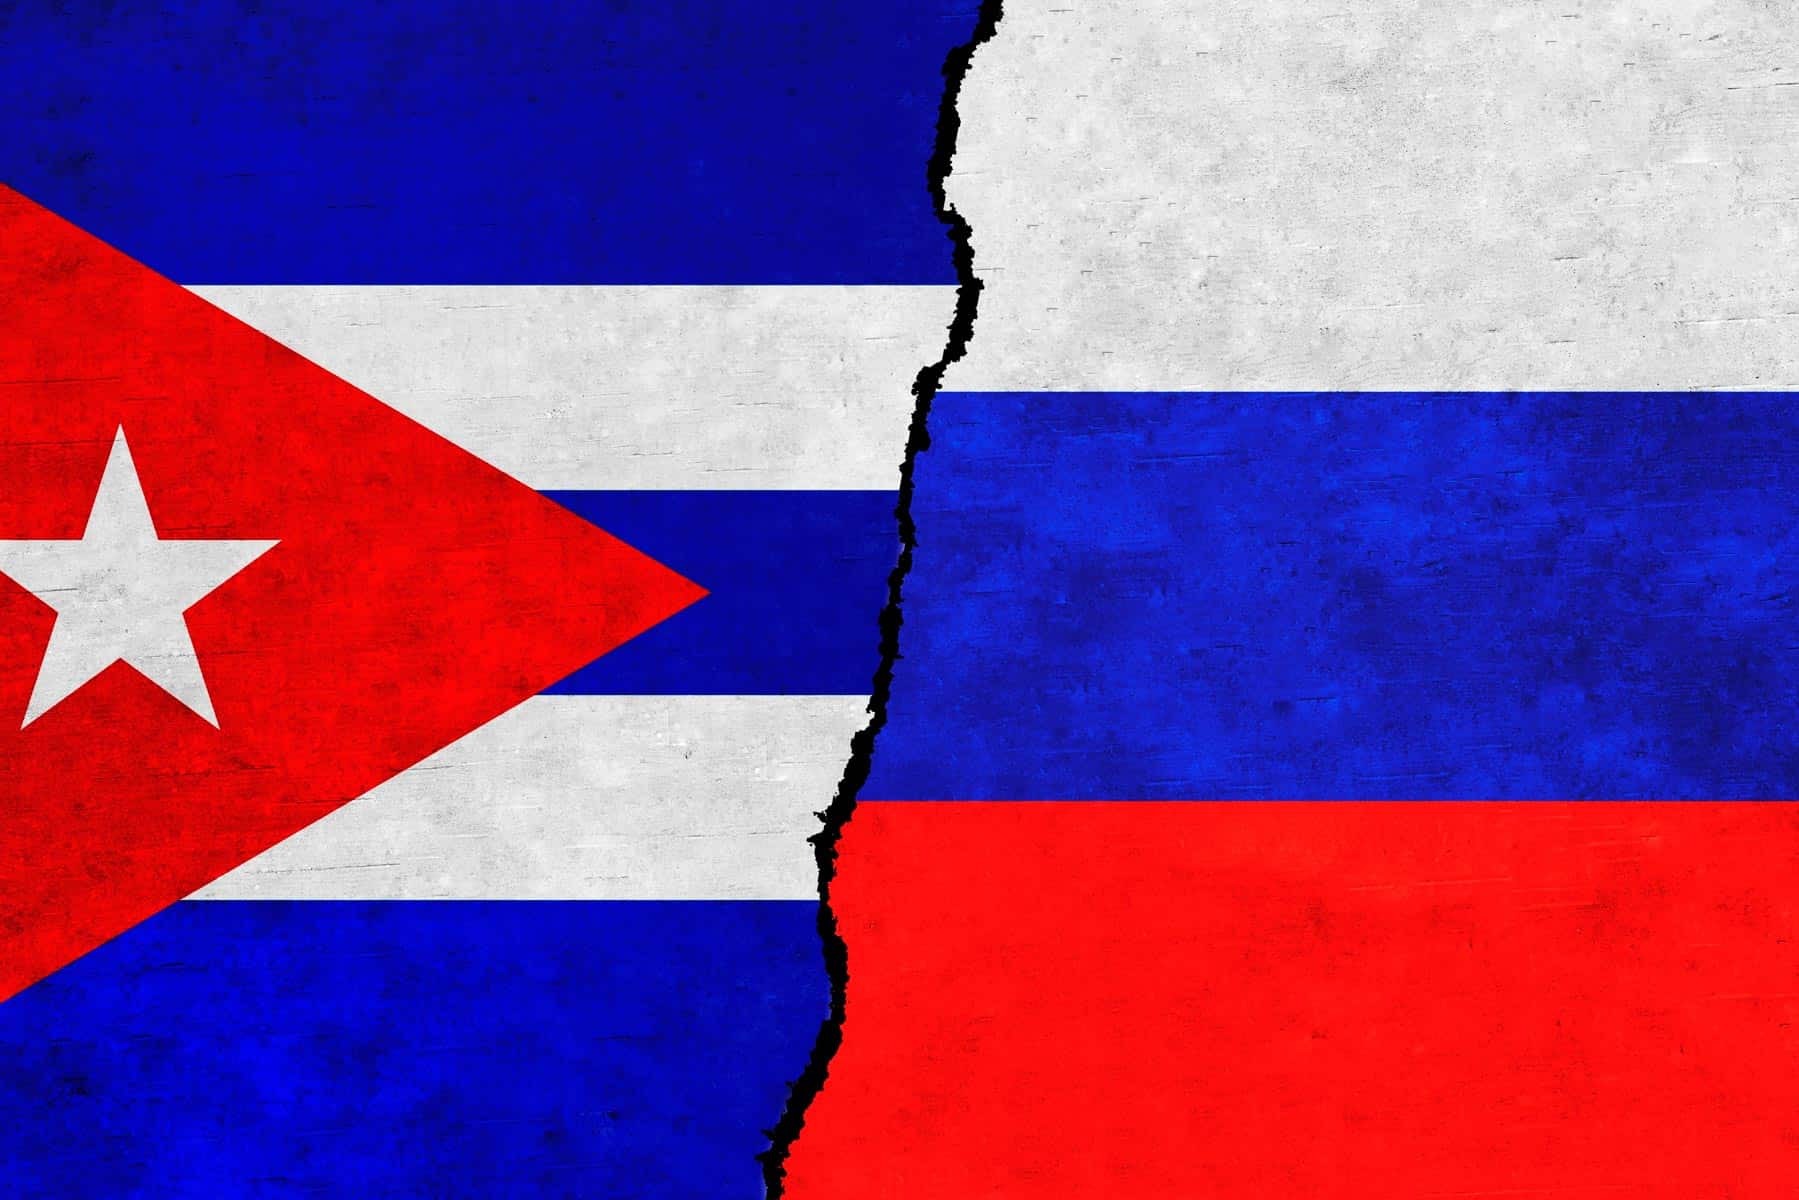 Concretan Varios Proyectos de Inversiones Cuba y Rusia